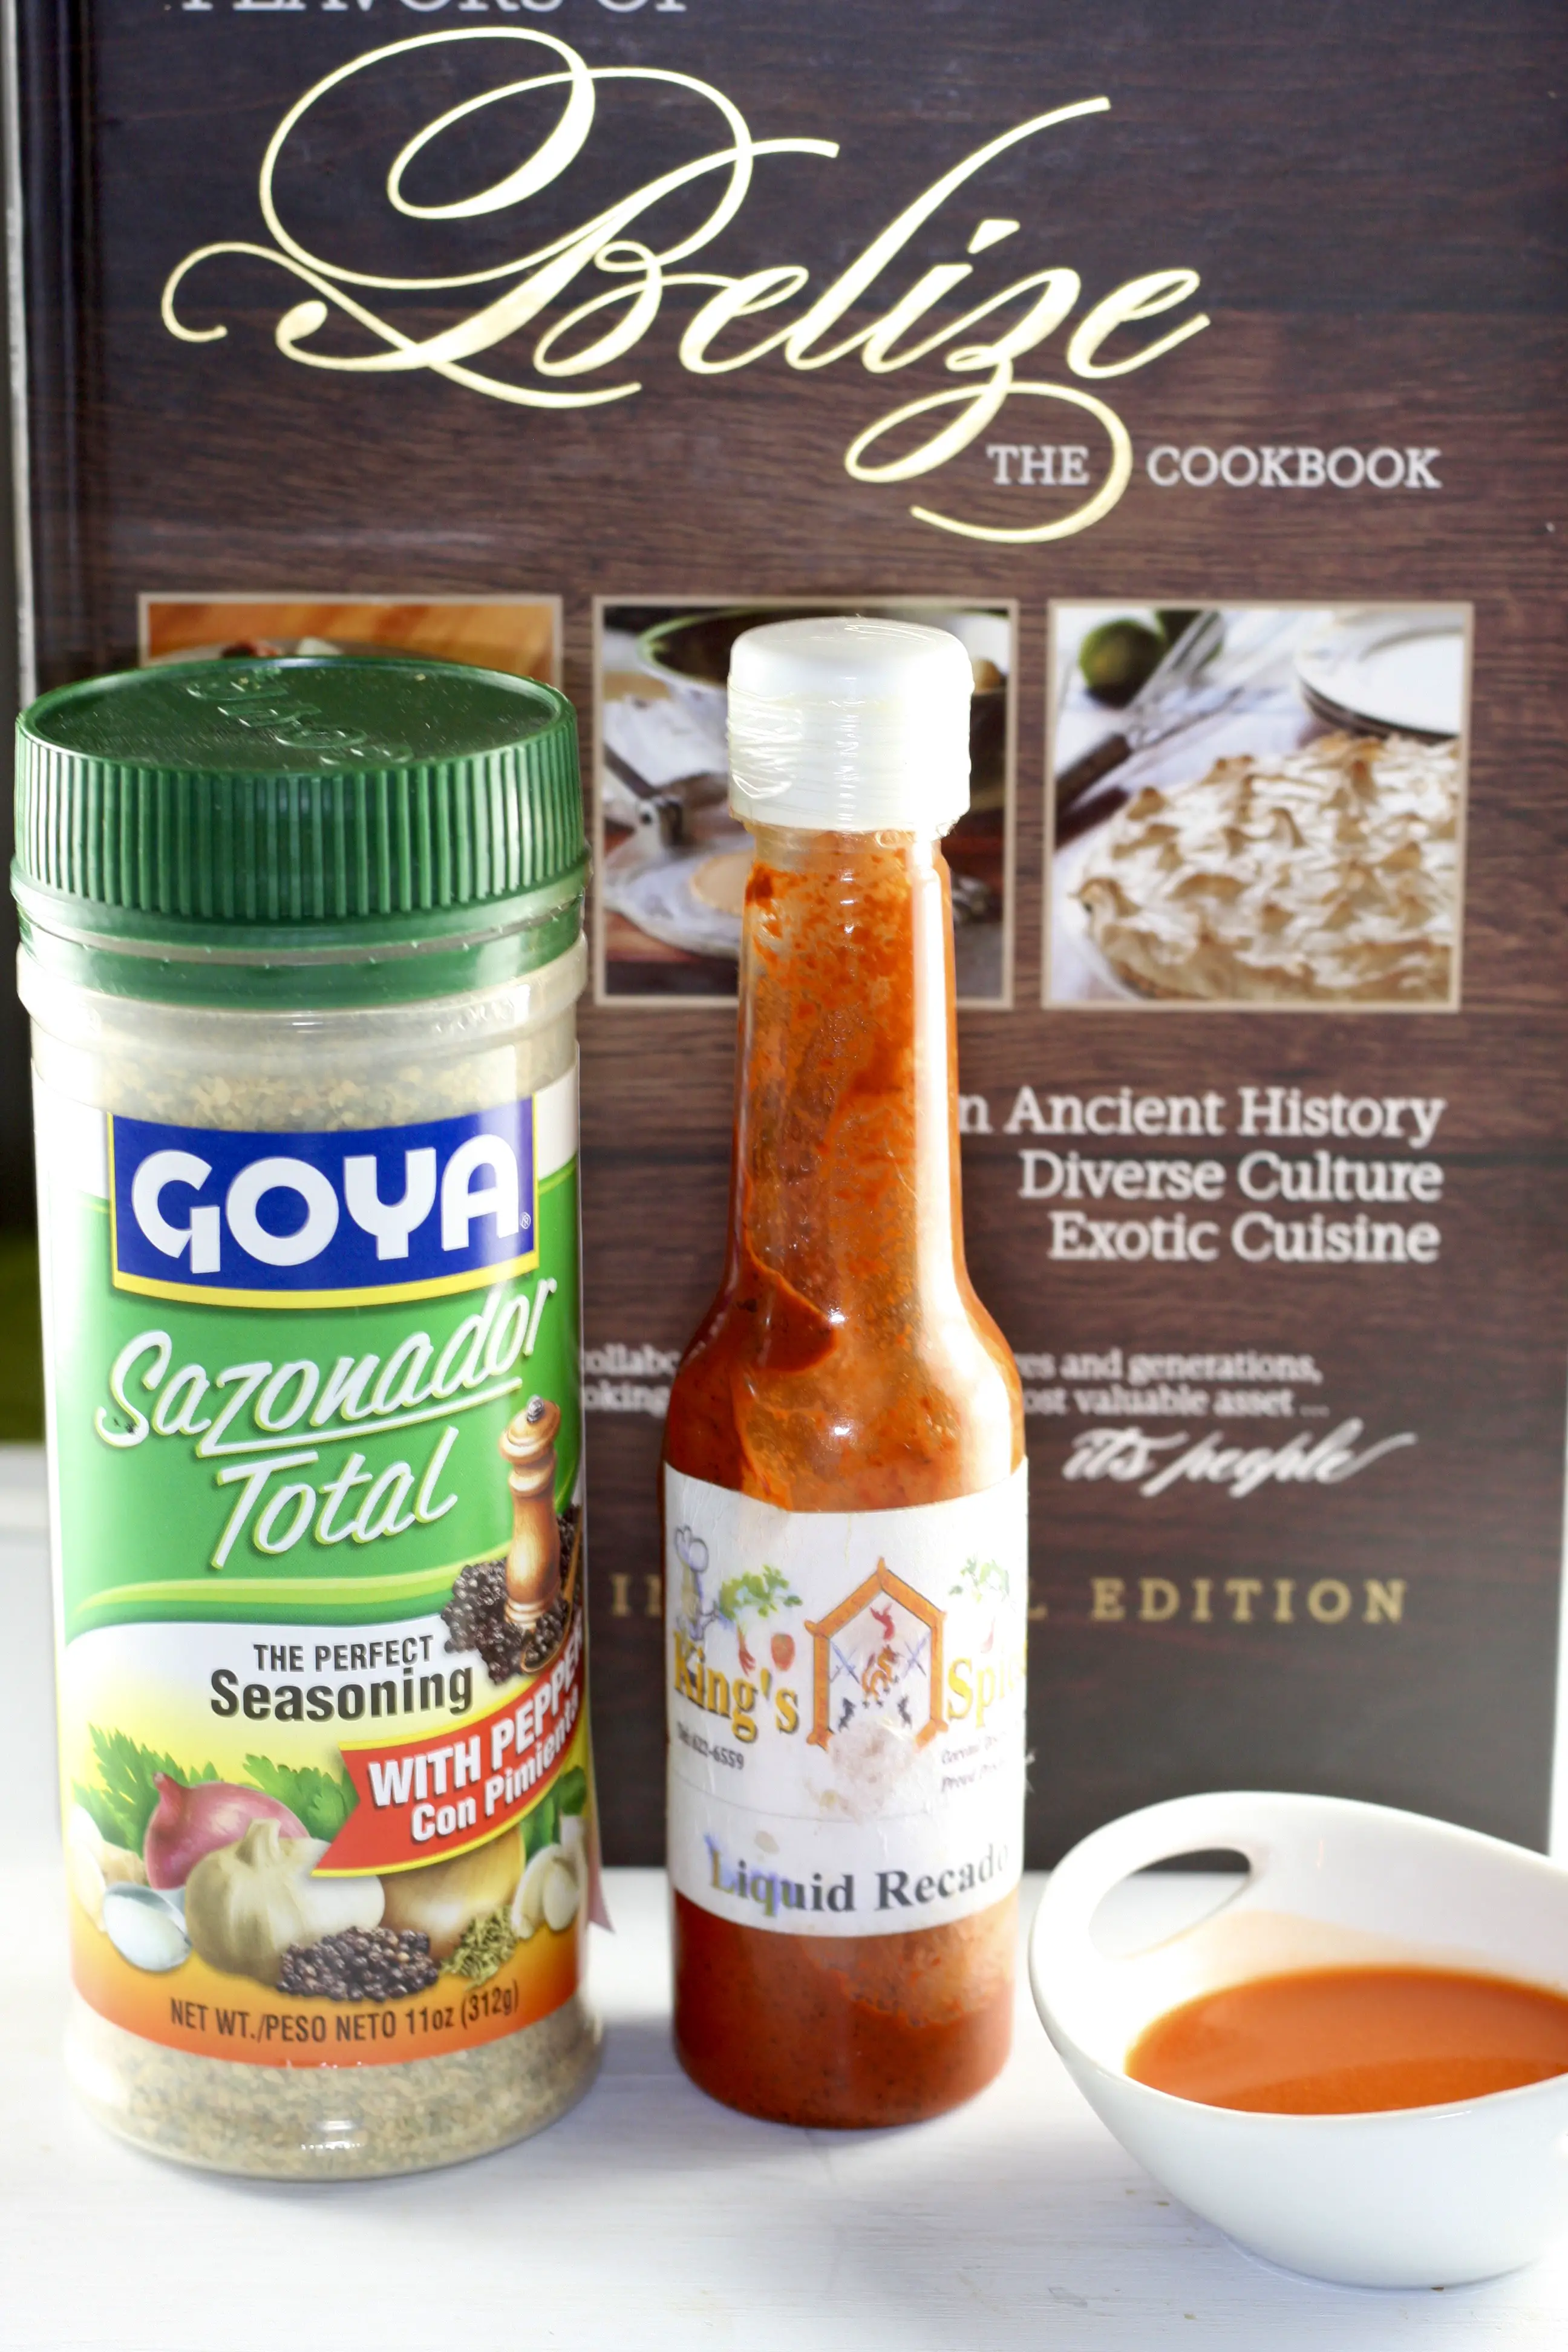 Goya Sazonador Total, Belizean Cookbook, and Red Liquid Recado